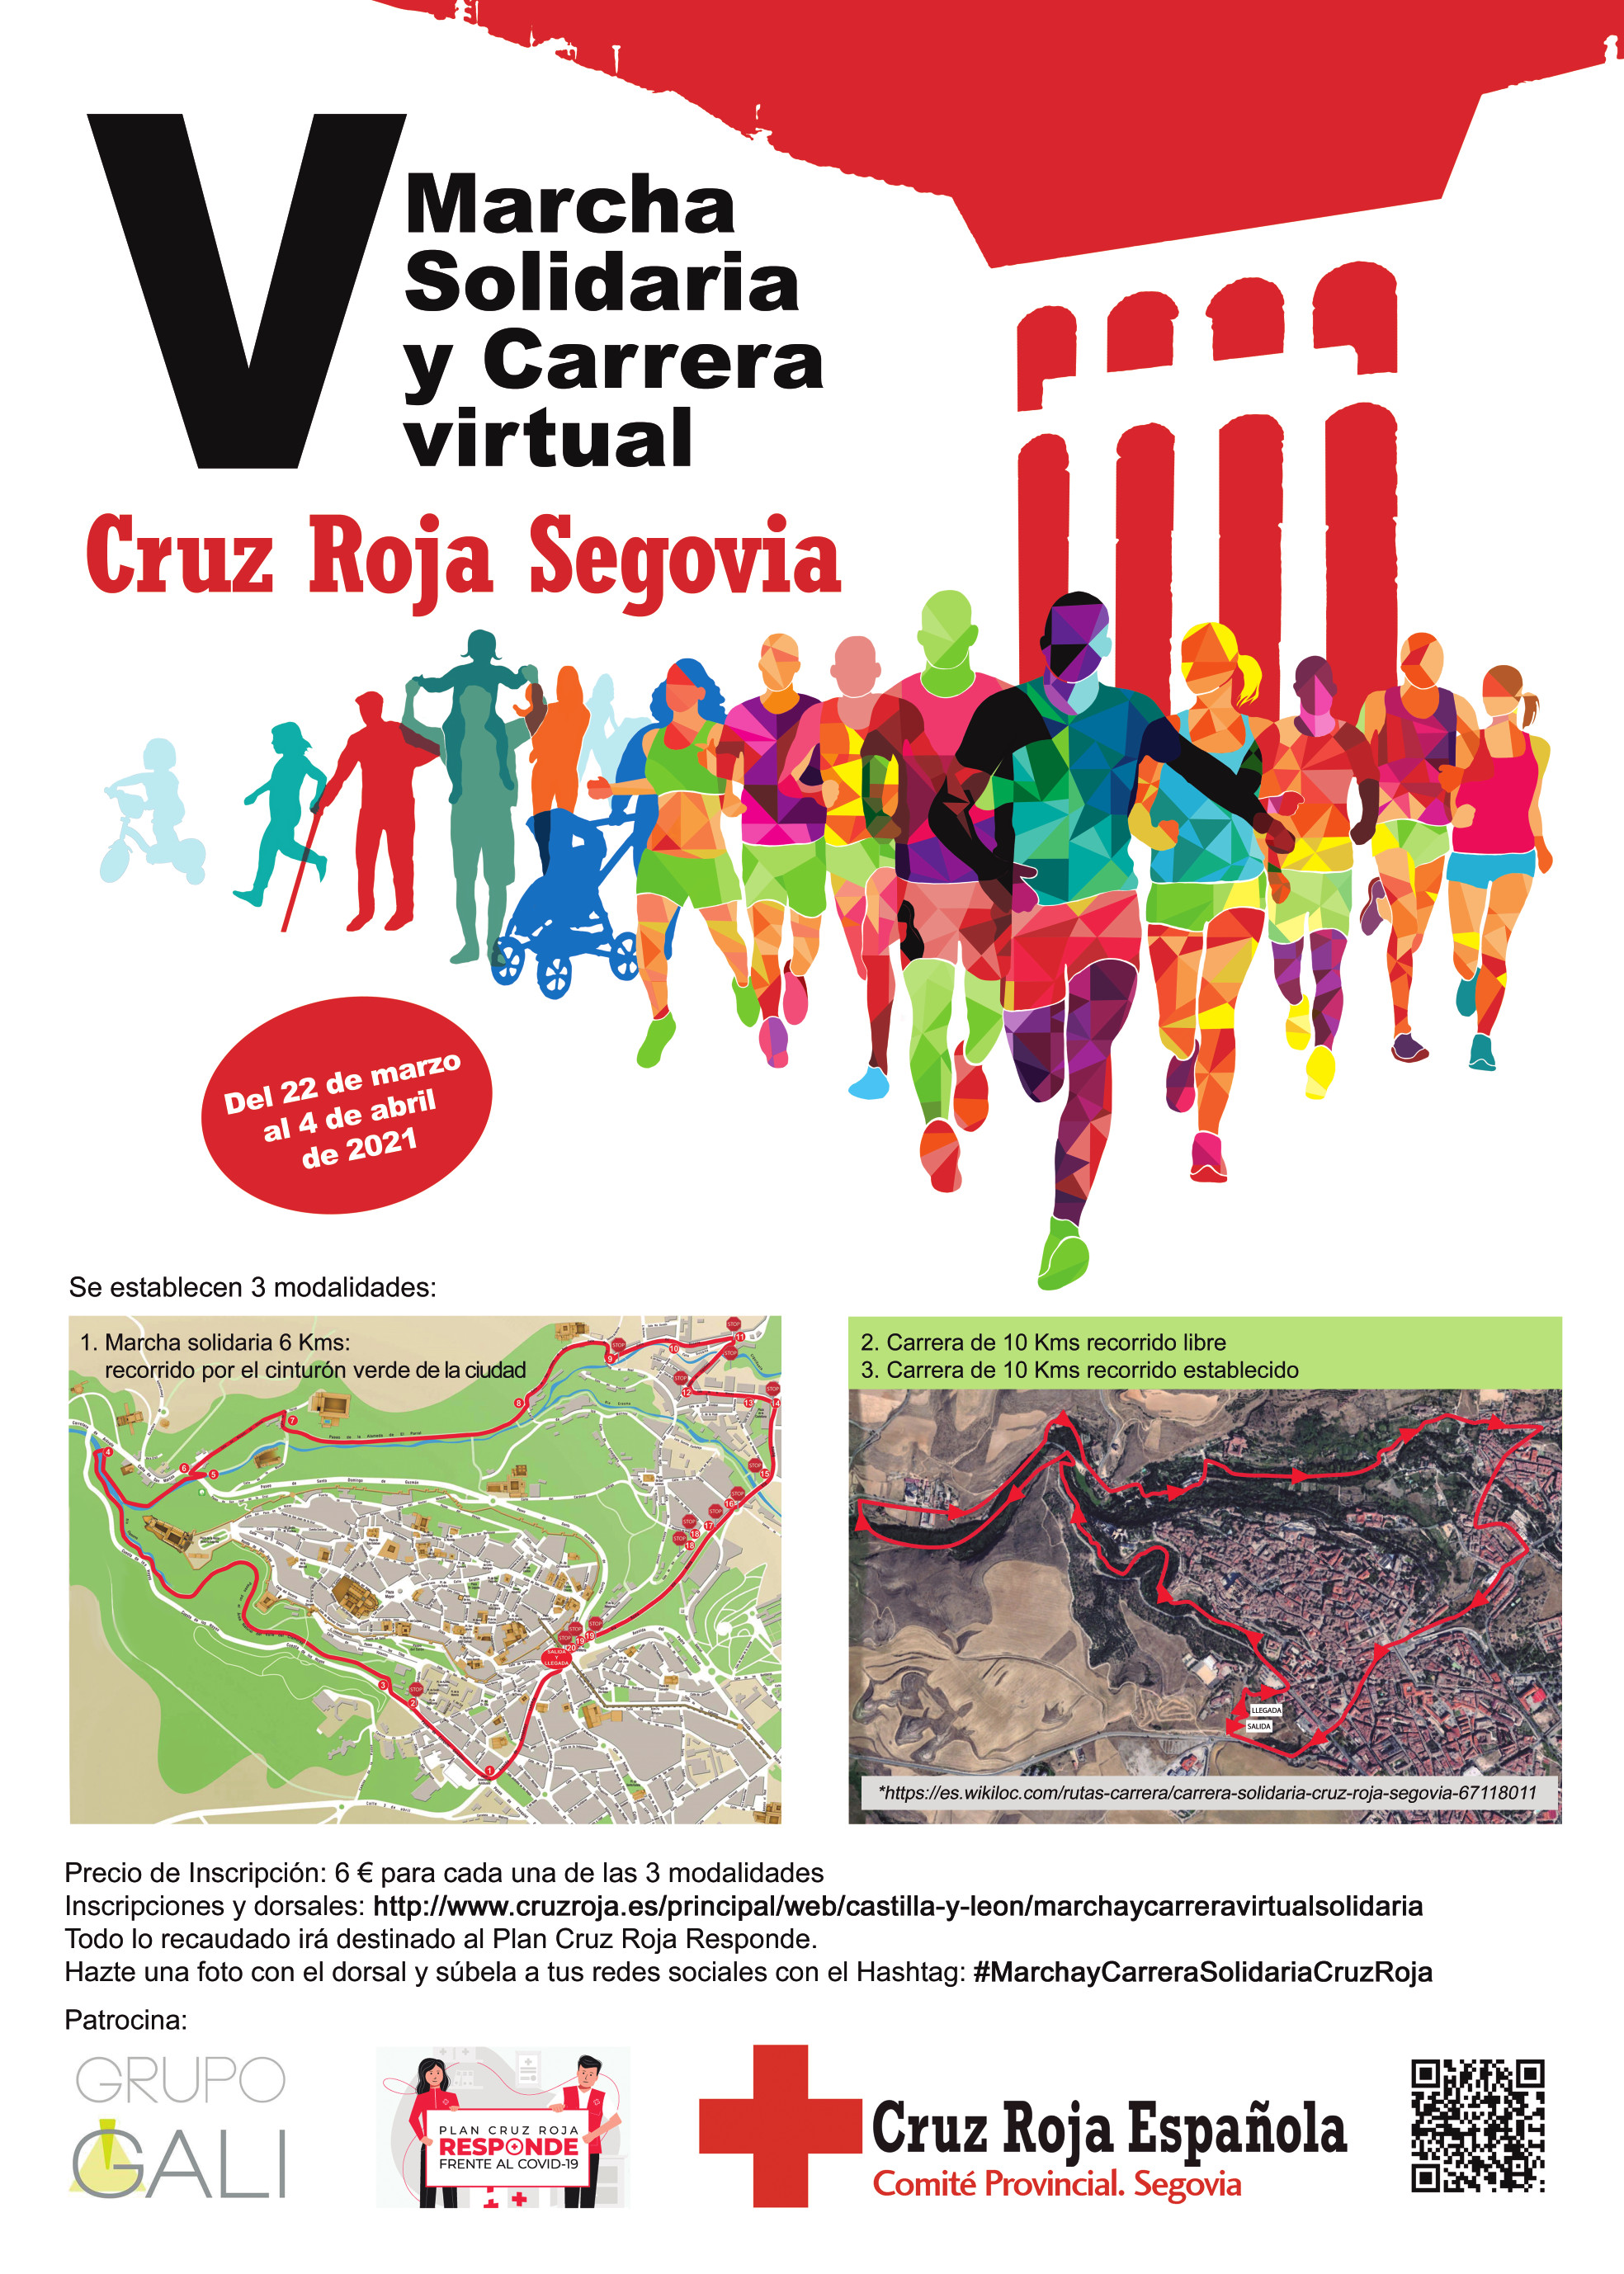 V Marcha y Carrera solidaria Cruz Roja Segovia 2021